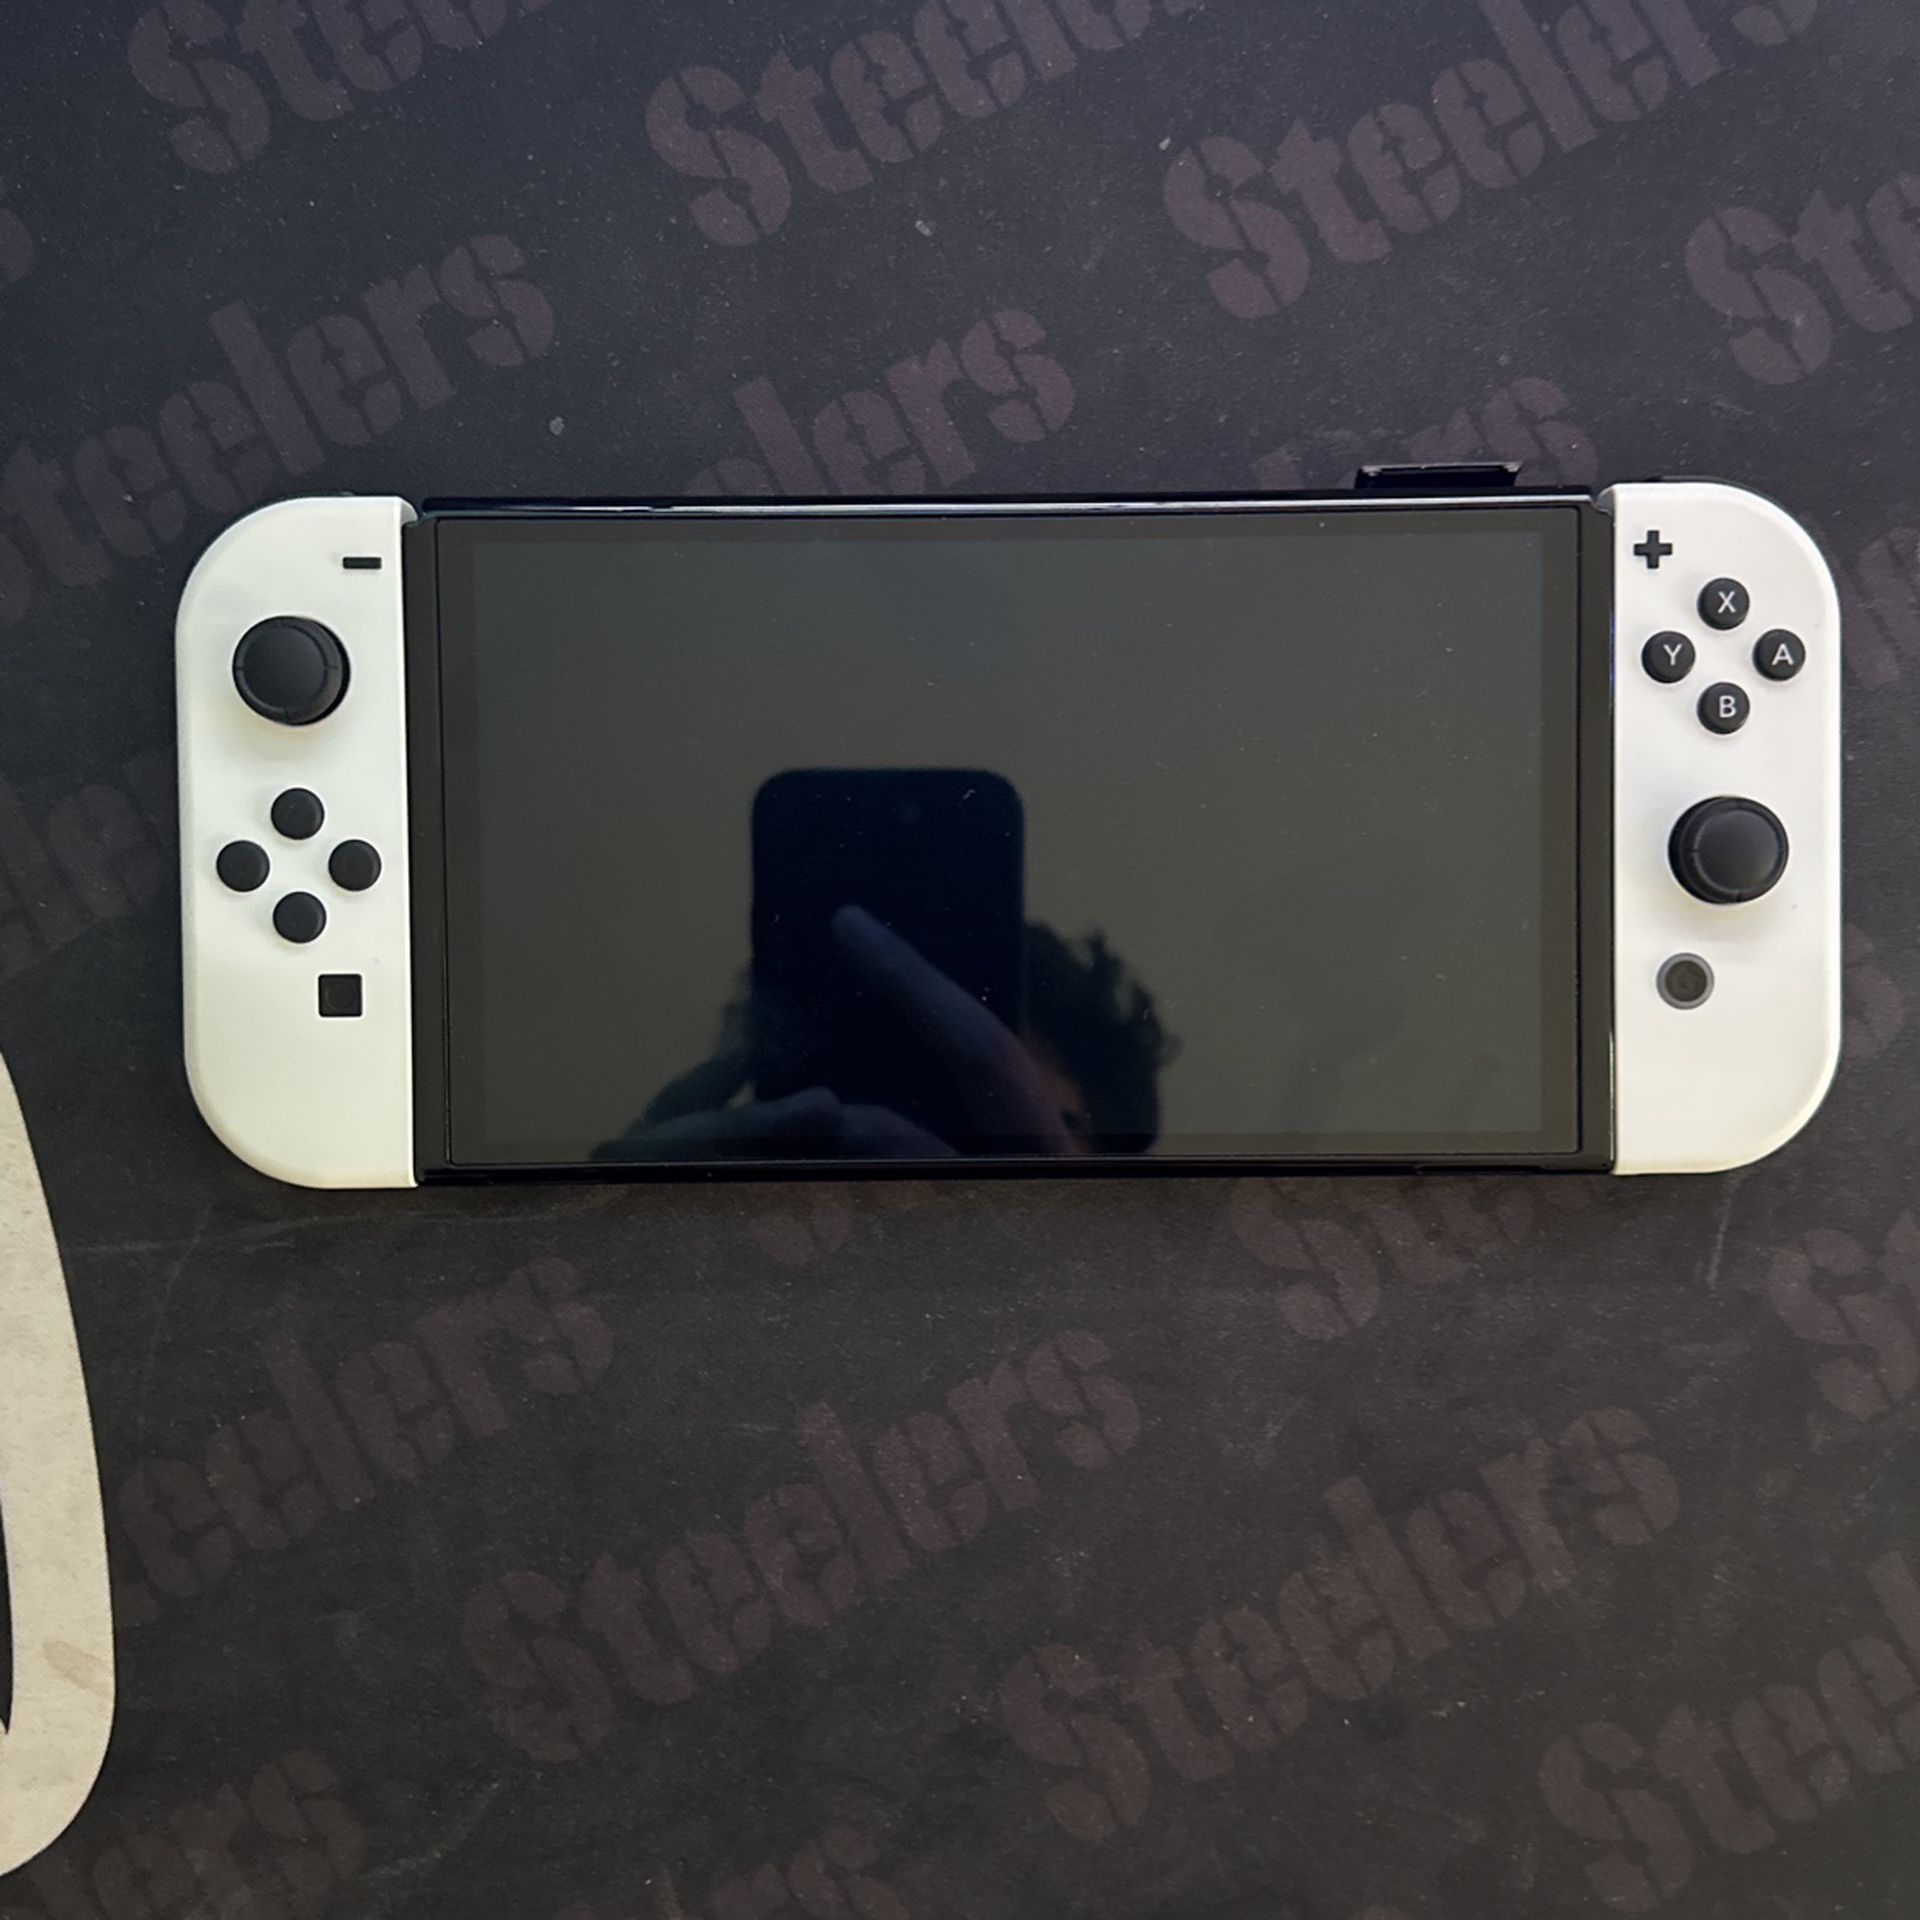 Nintendo Switch OLED White